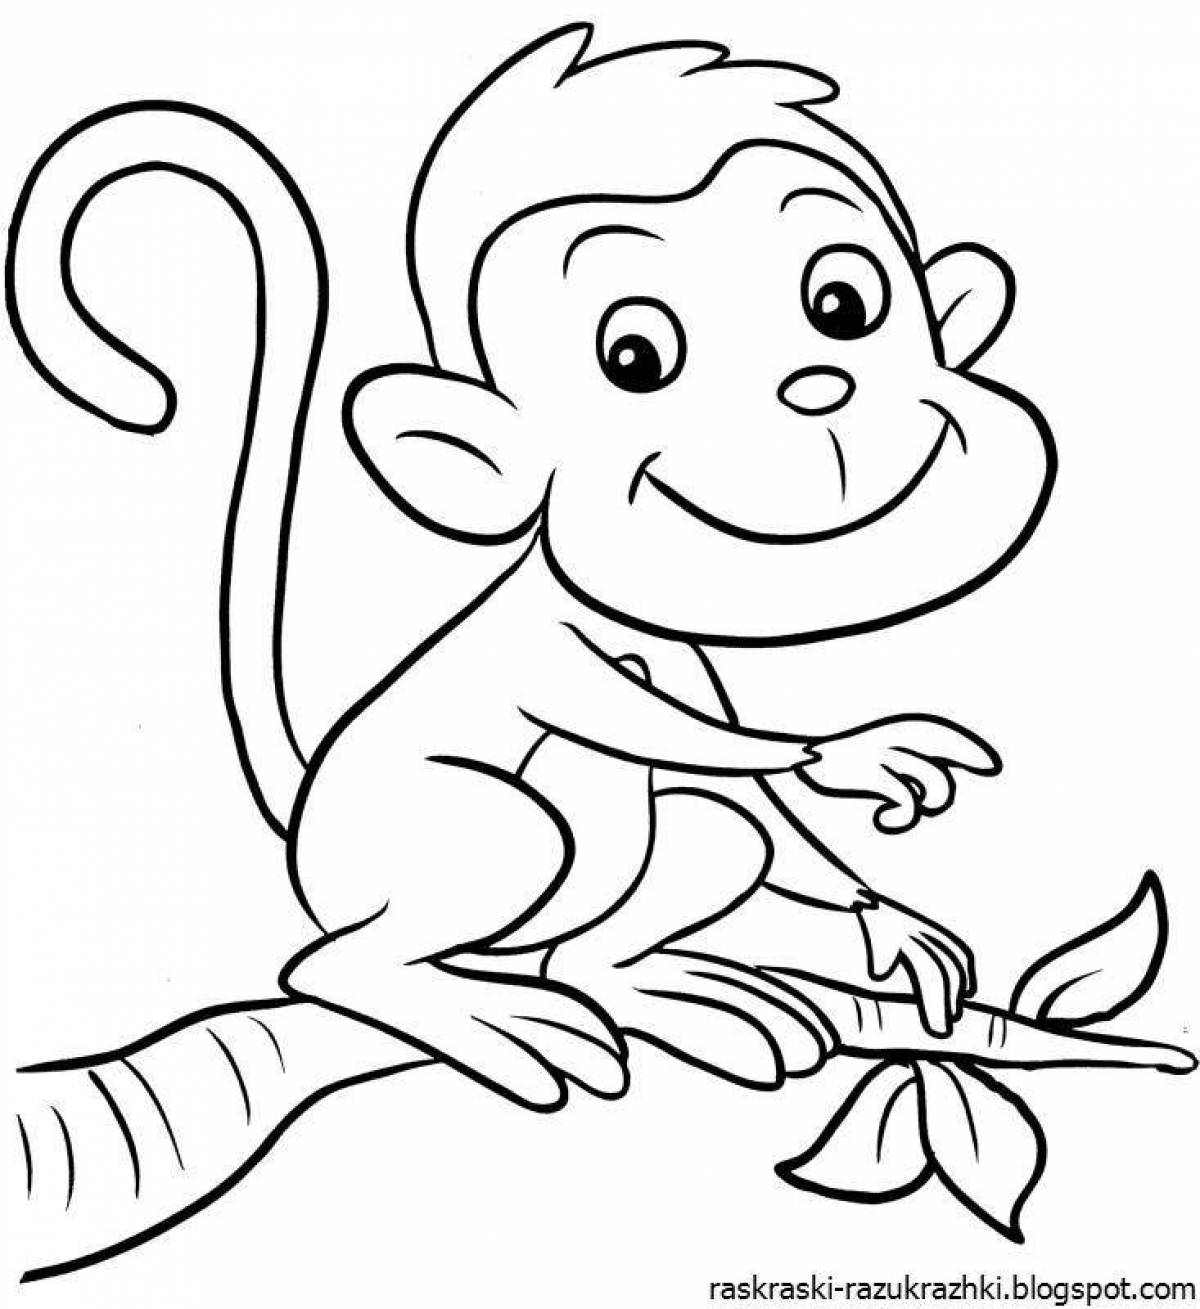 Веселая раскраска обезьяна для детей